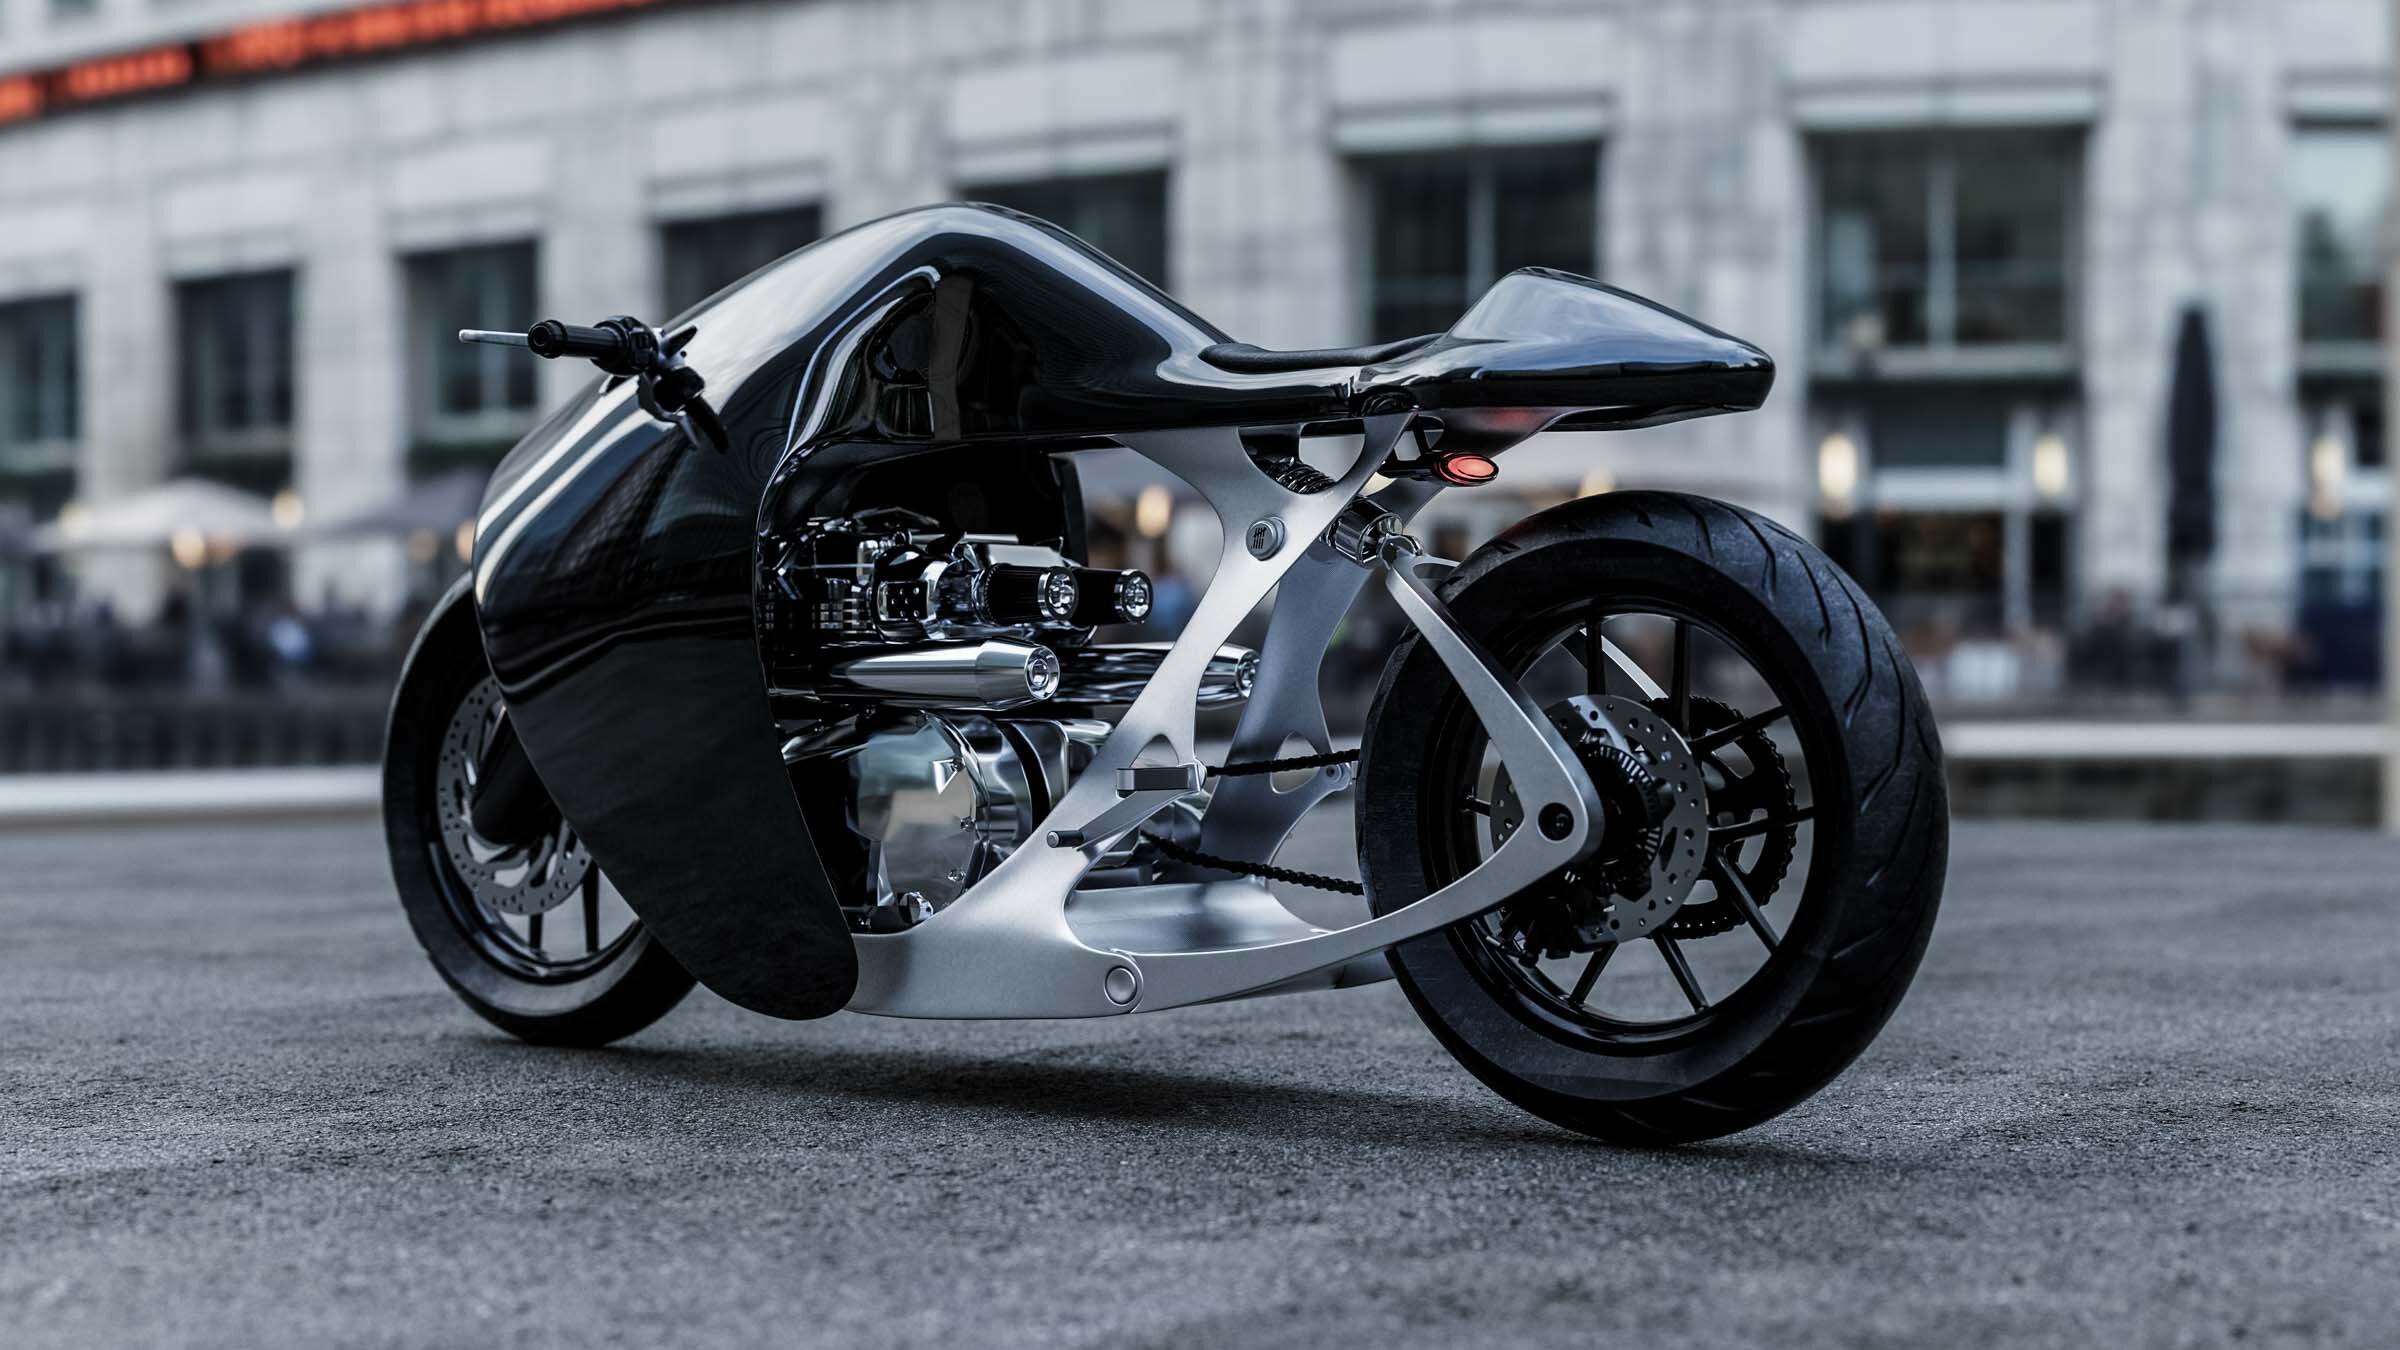 imagen 3 de The Supermarine. La nueva y espectacular motocicleta de Bandit9.